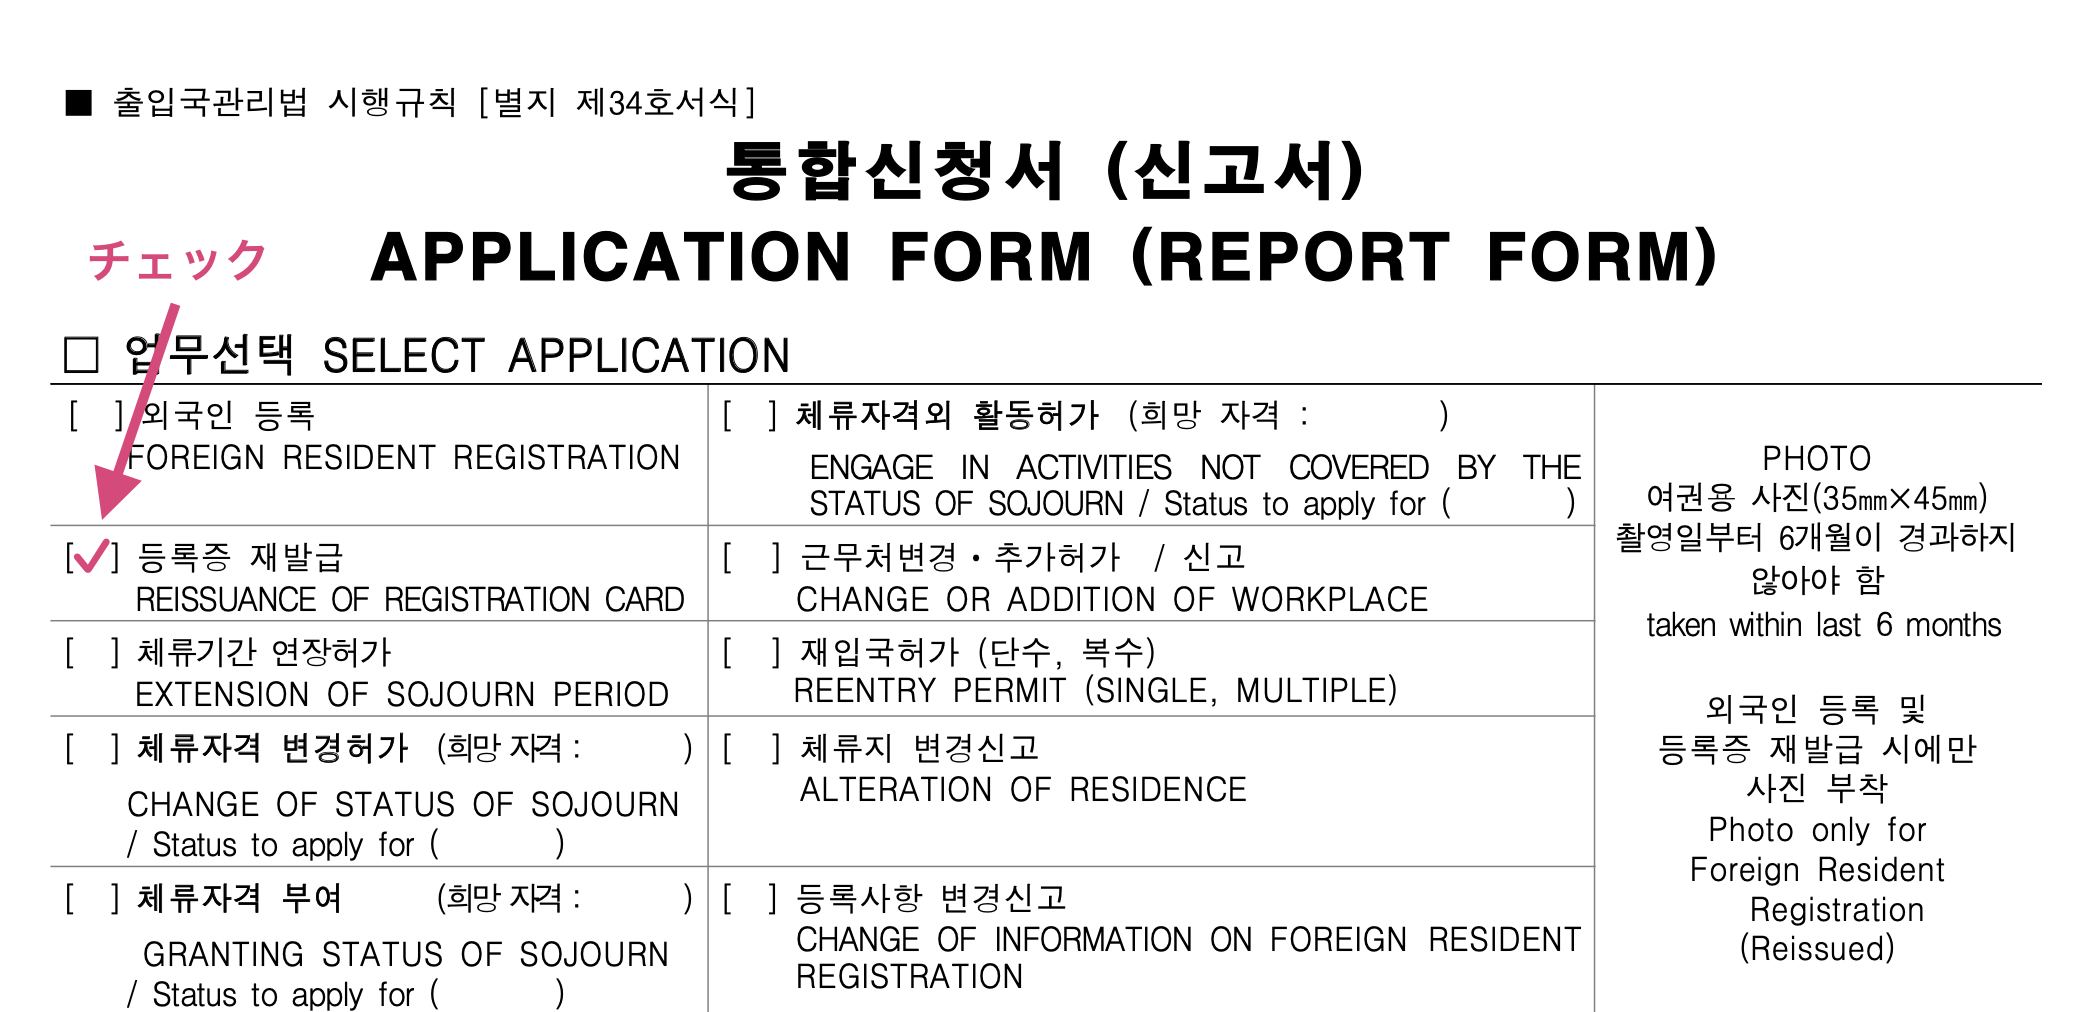 外国人登録証を再発給したい場合の申請書の書き方